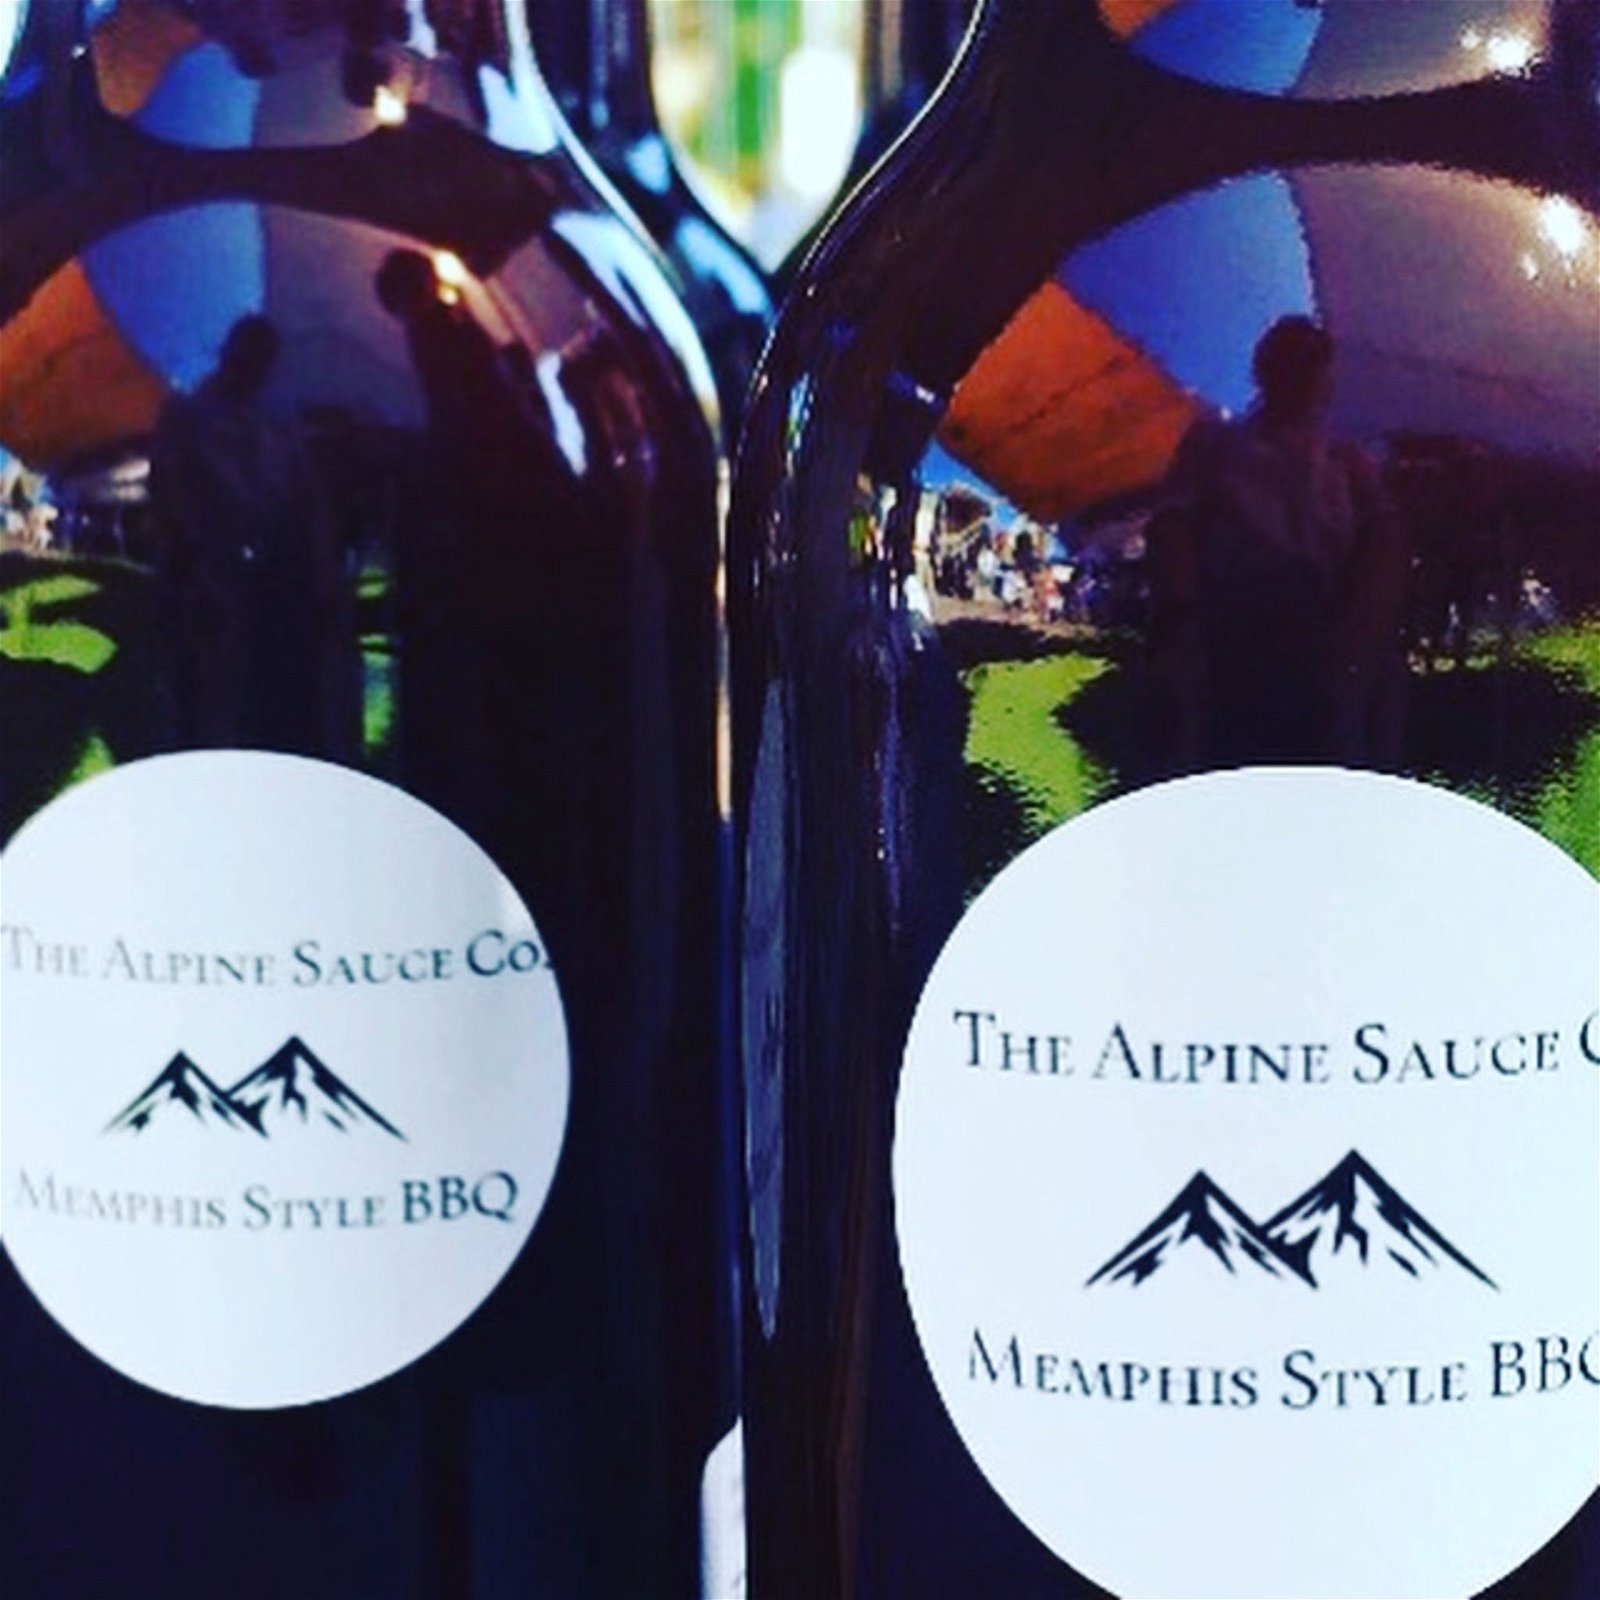 The Alpine Sauce Co